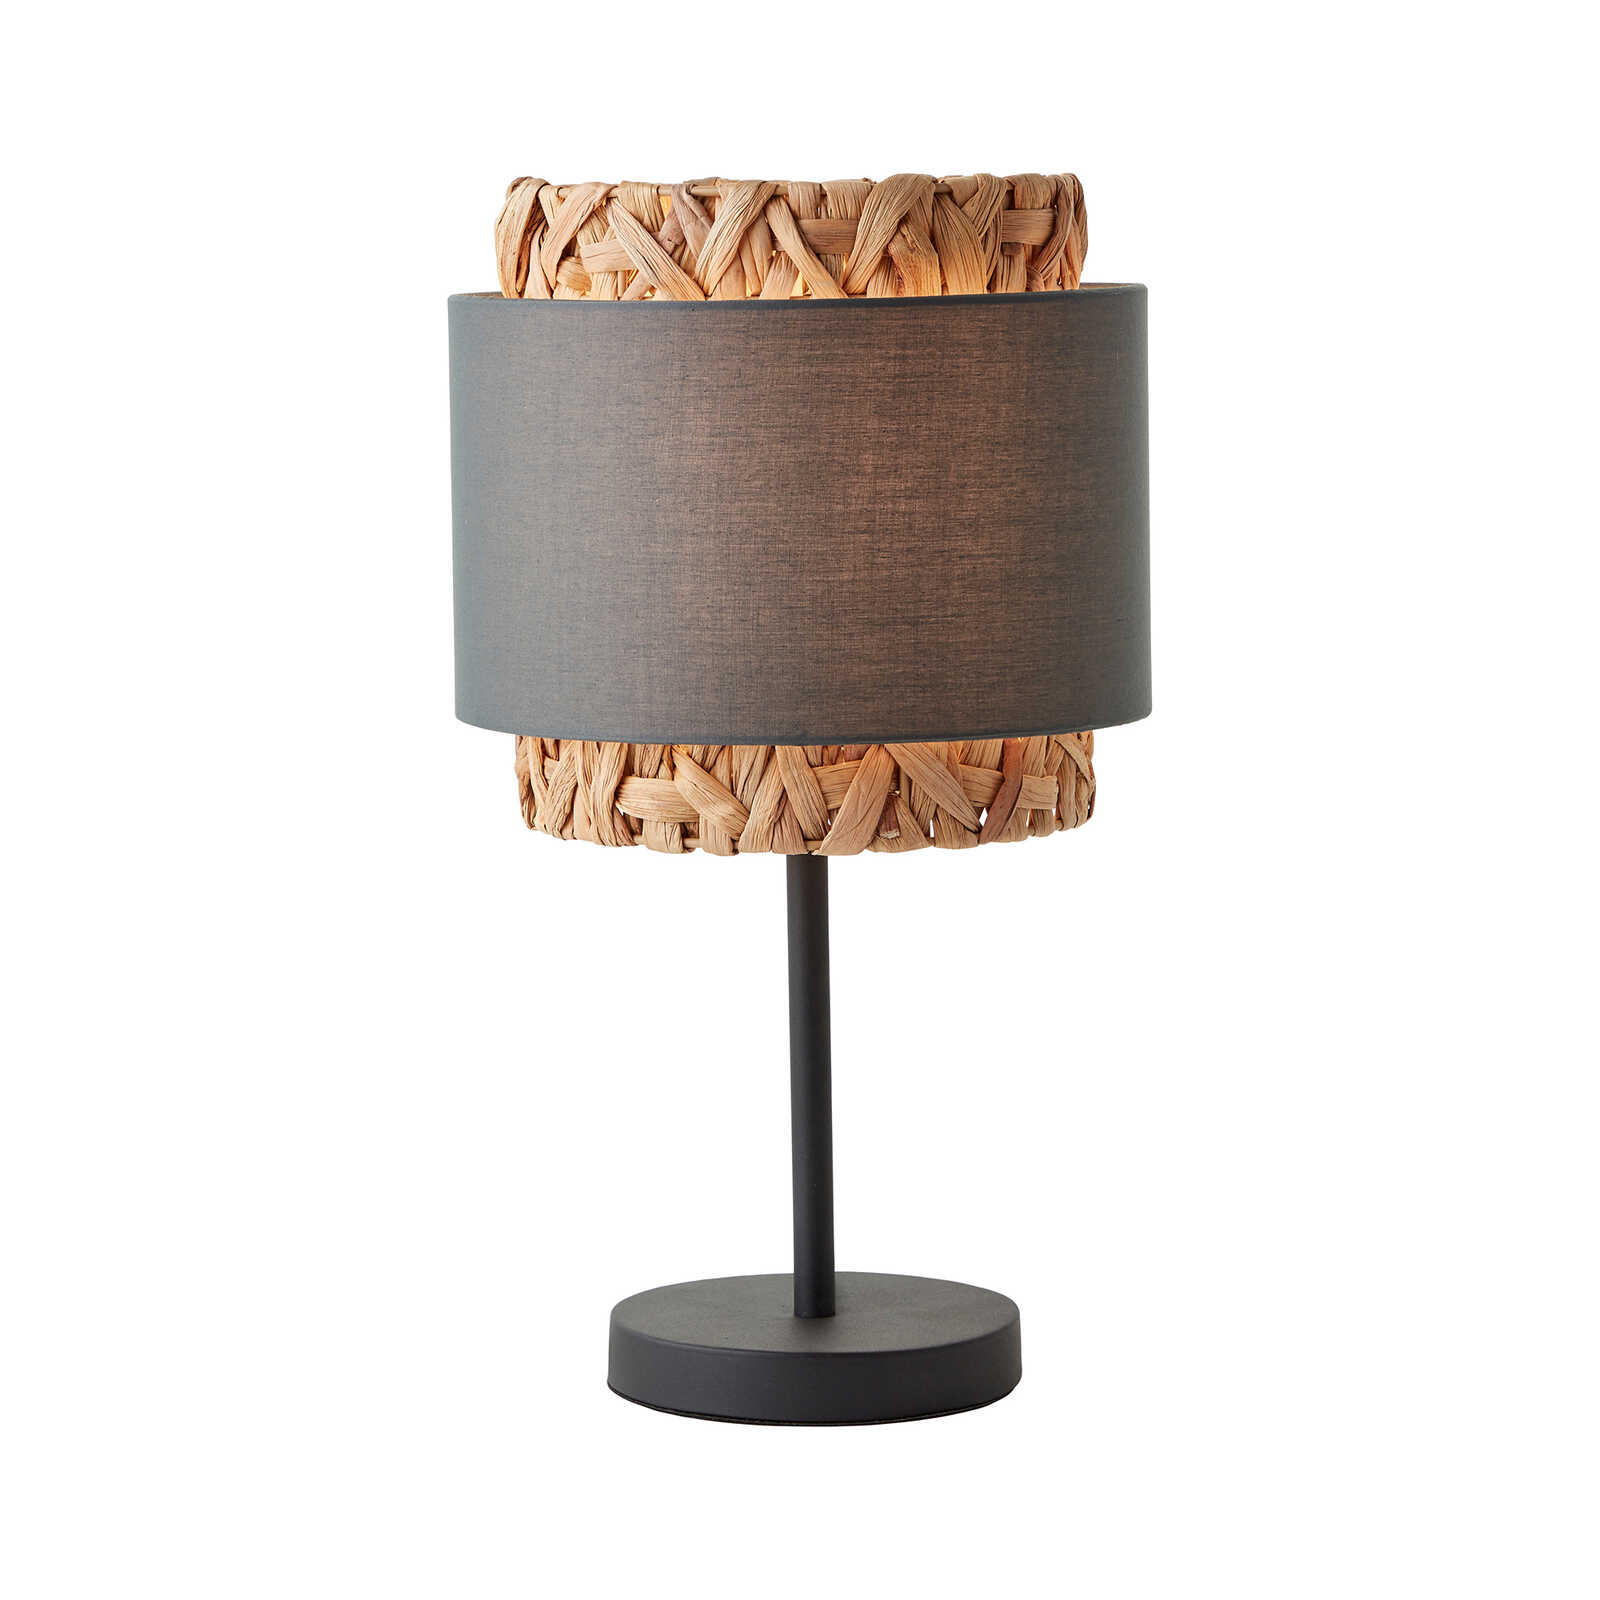 Textile table lamp - Till 2 - Beige
